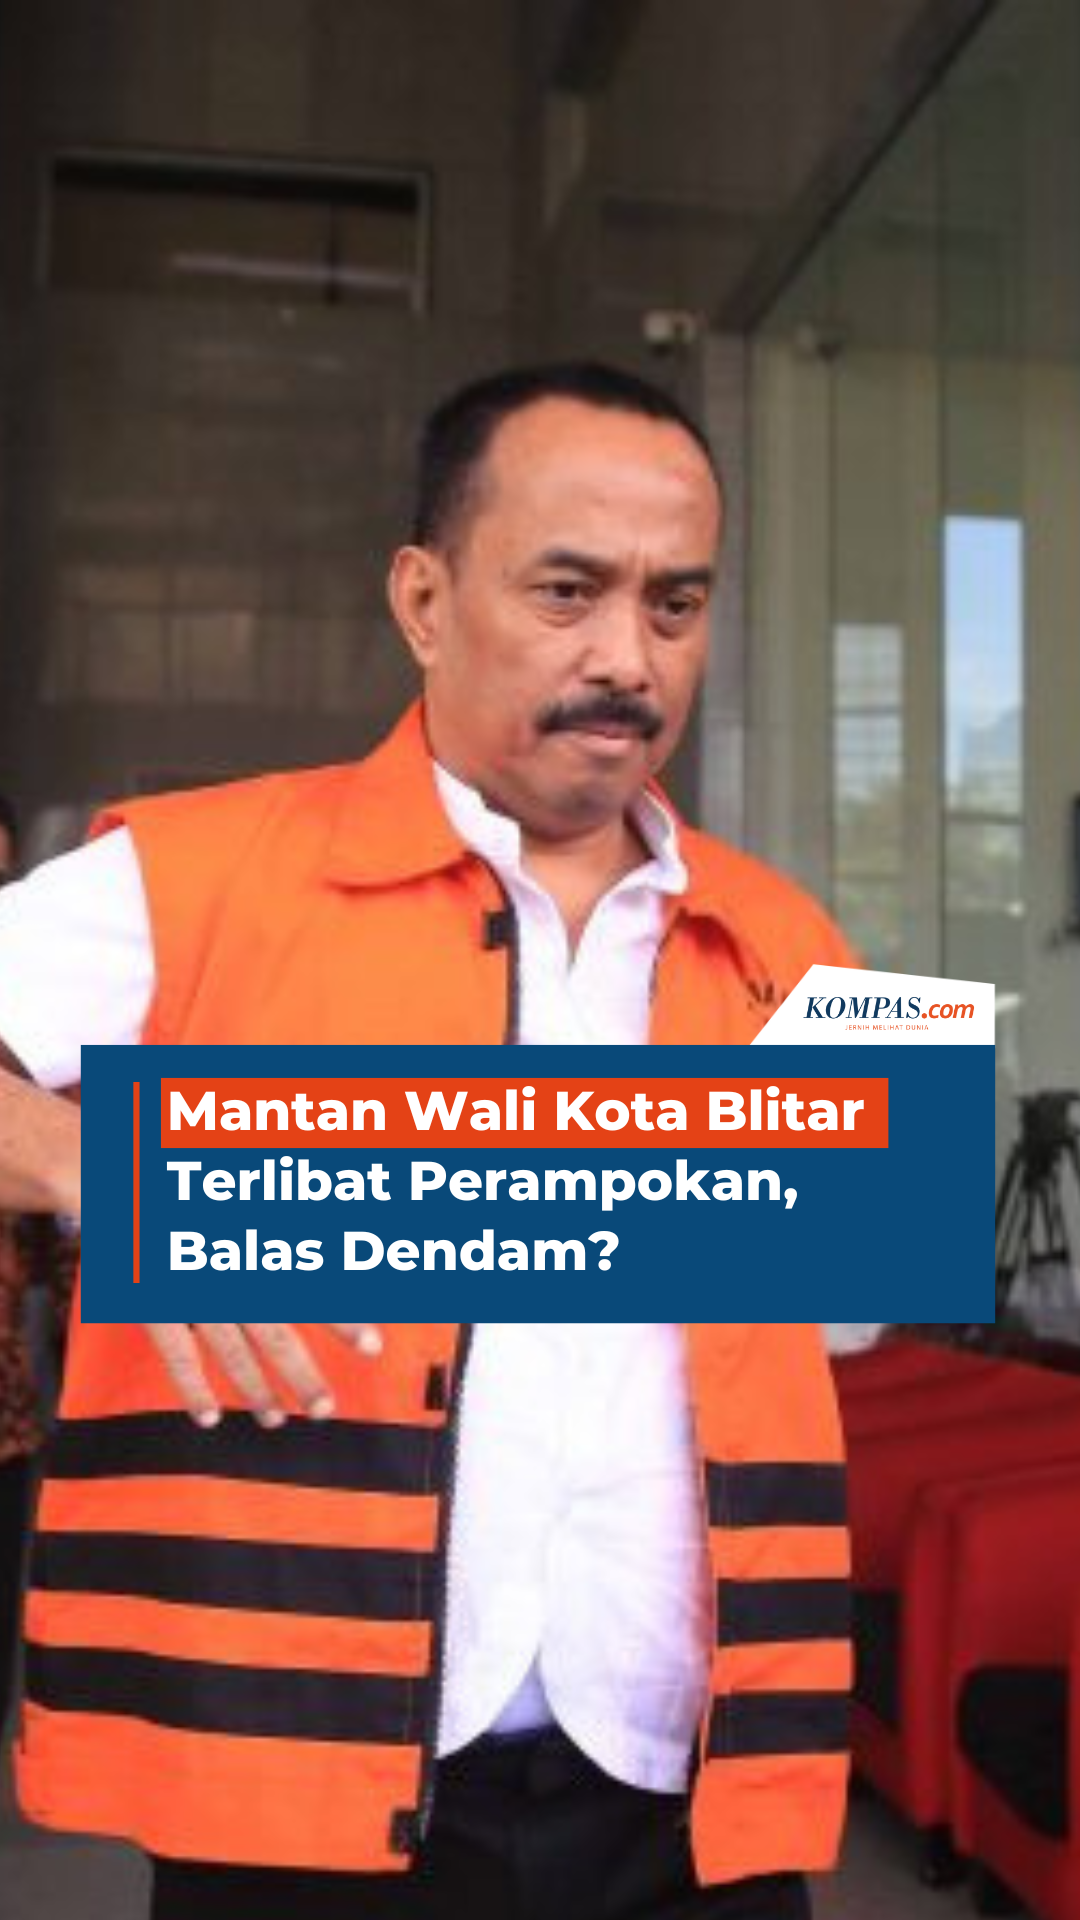 Mantan Wali Kota Blitar Terlibat Perampokan, Balas Dendam?